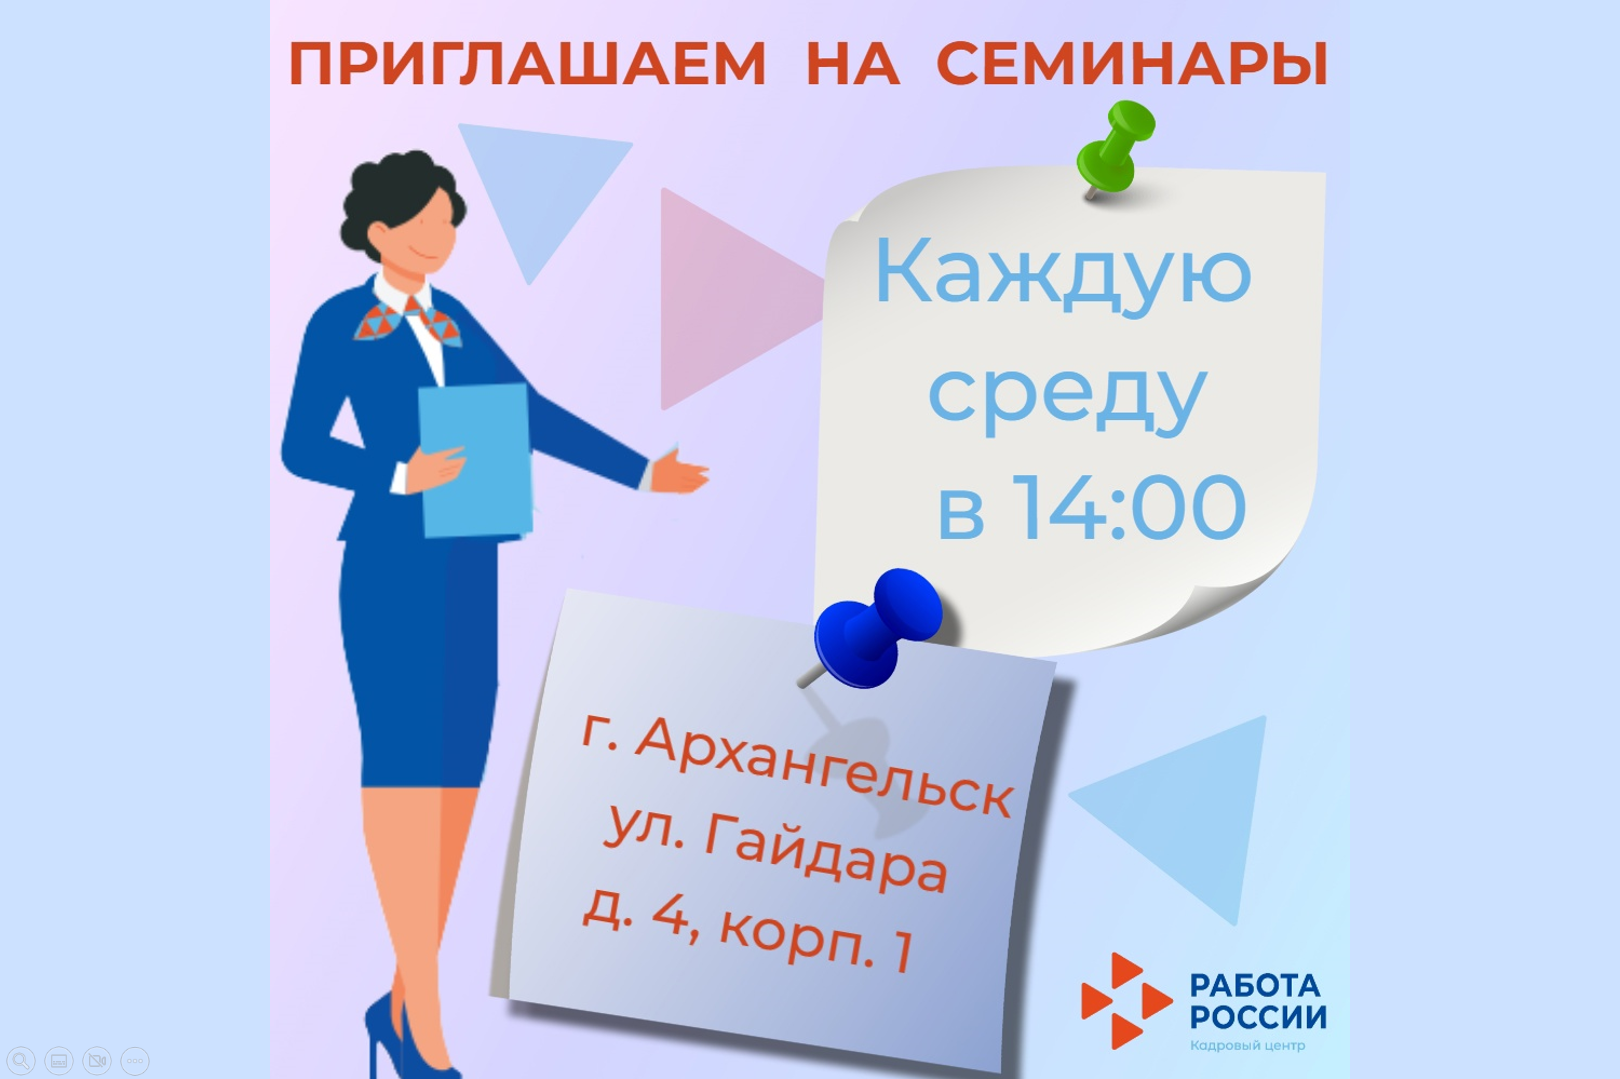 Кадровый центр по городу Архангельску приглашает безработных граждан на еженедельные семинары